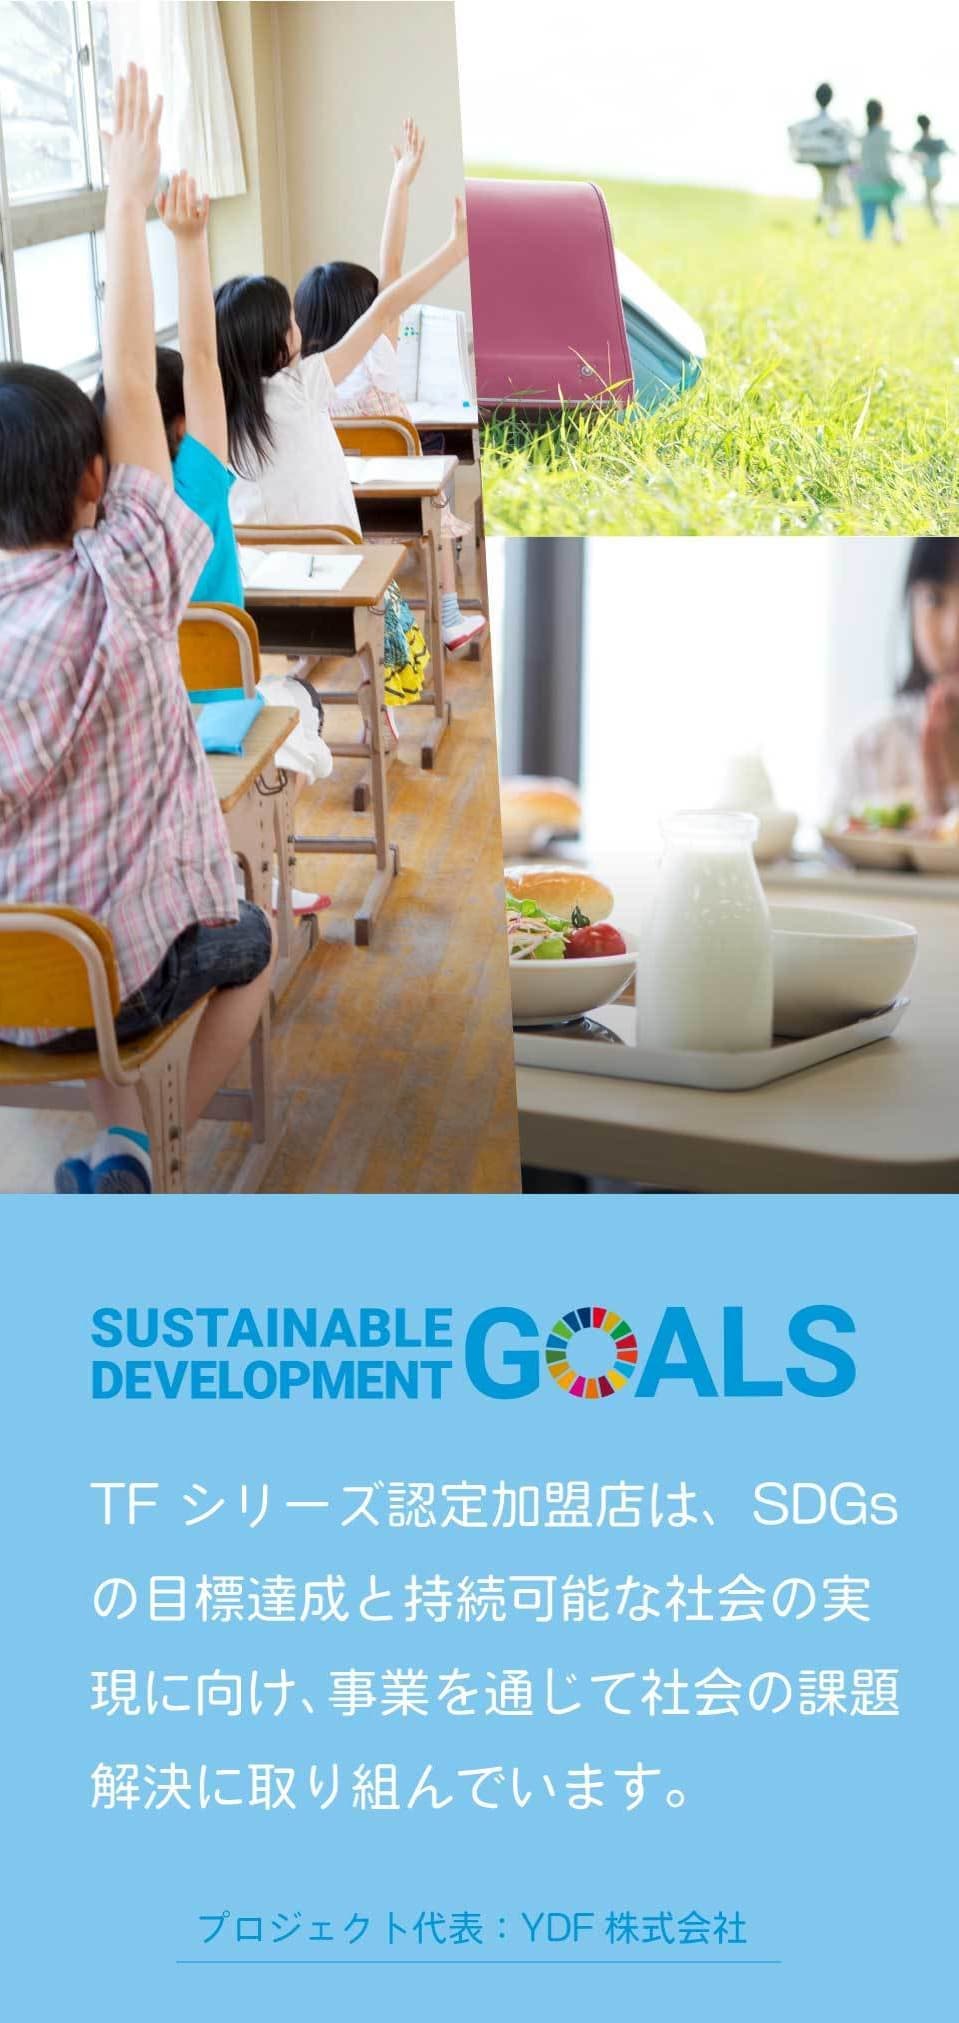 TFシリーズ認定加盟店は、SDGsの目標達成と持続可能な社会の実現に向け、事業を通じて社会の課題解決に取り組んでいます。